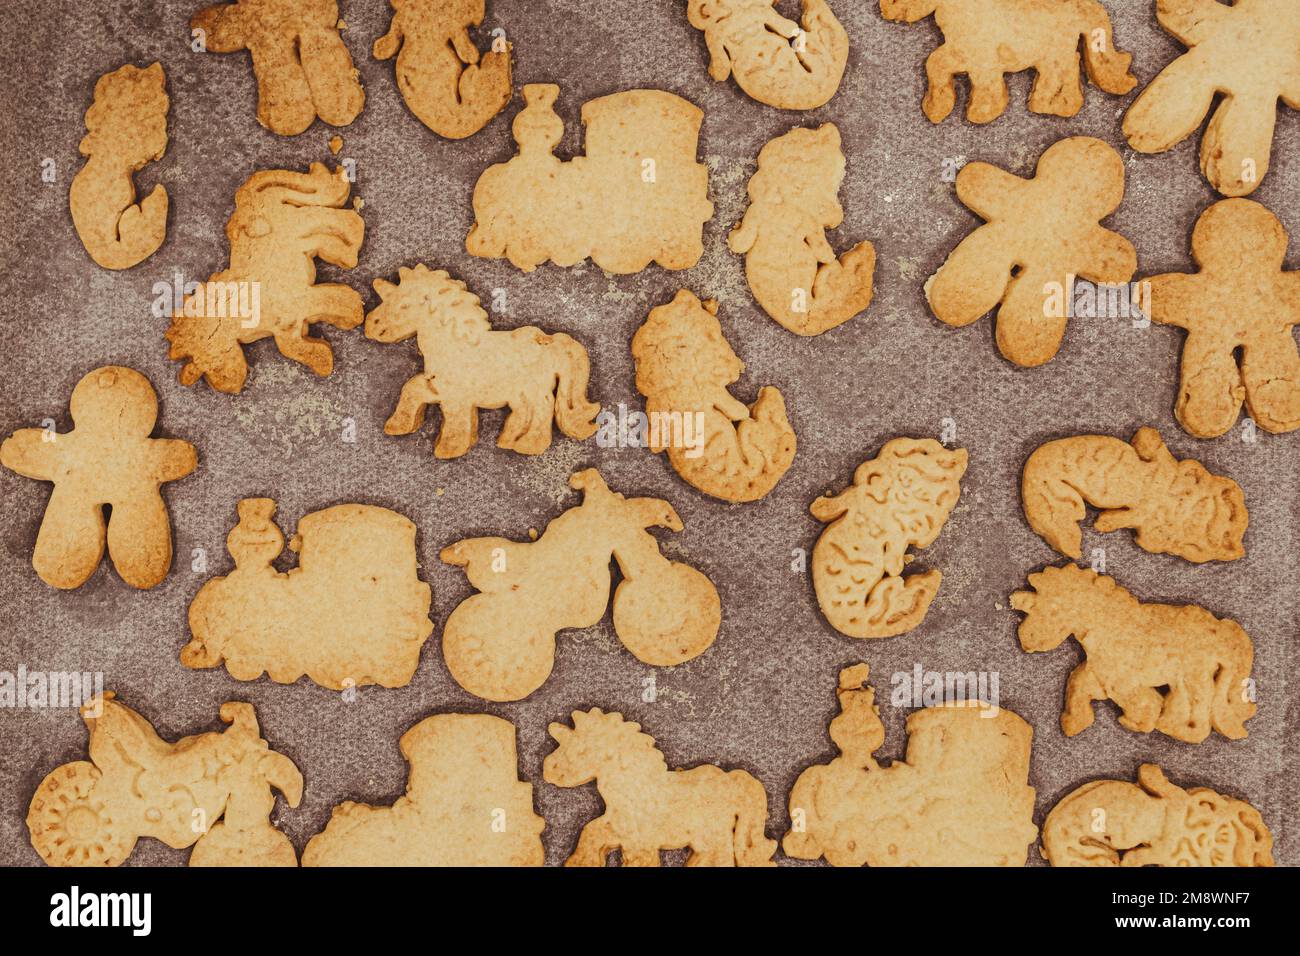 Biscuits faits maison biscuits avec des formes de jouets comme des motos, des trains, des licornes et des mermaids Banque D'Images